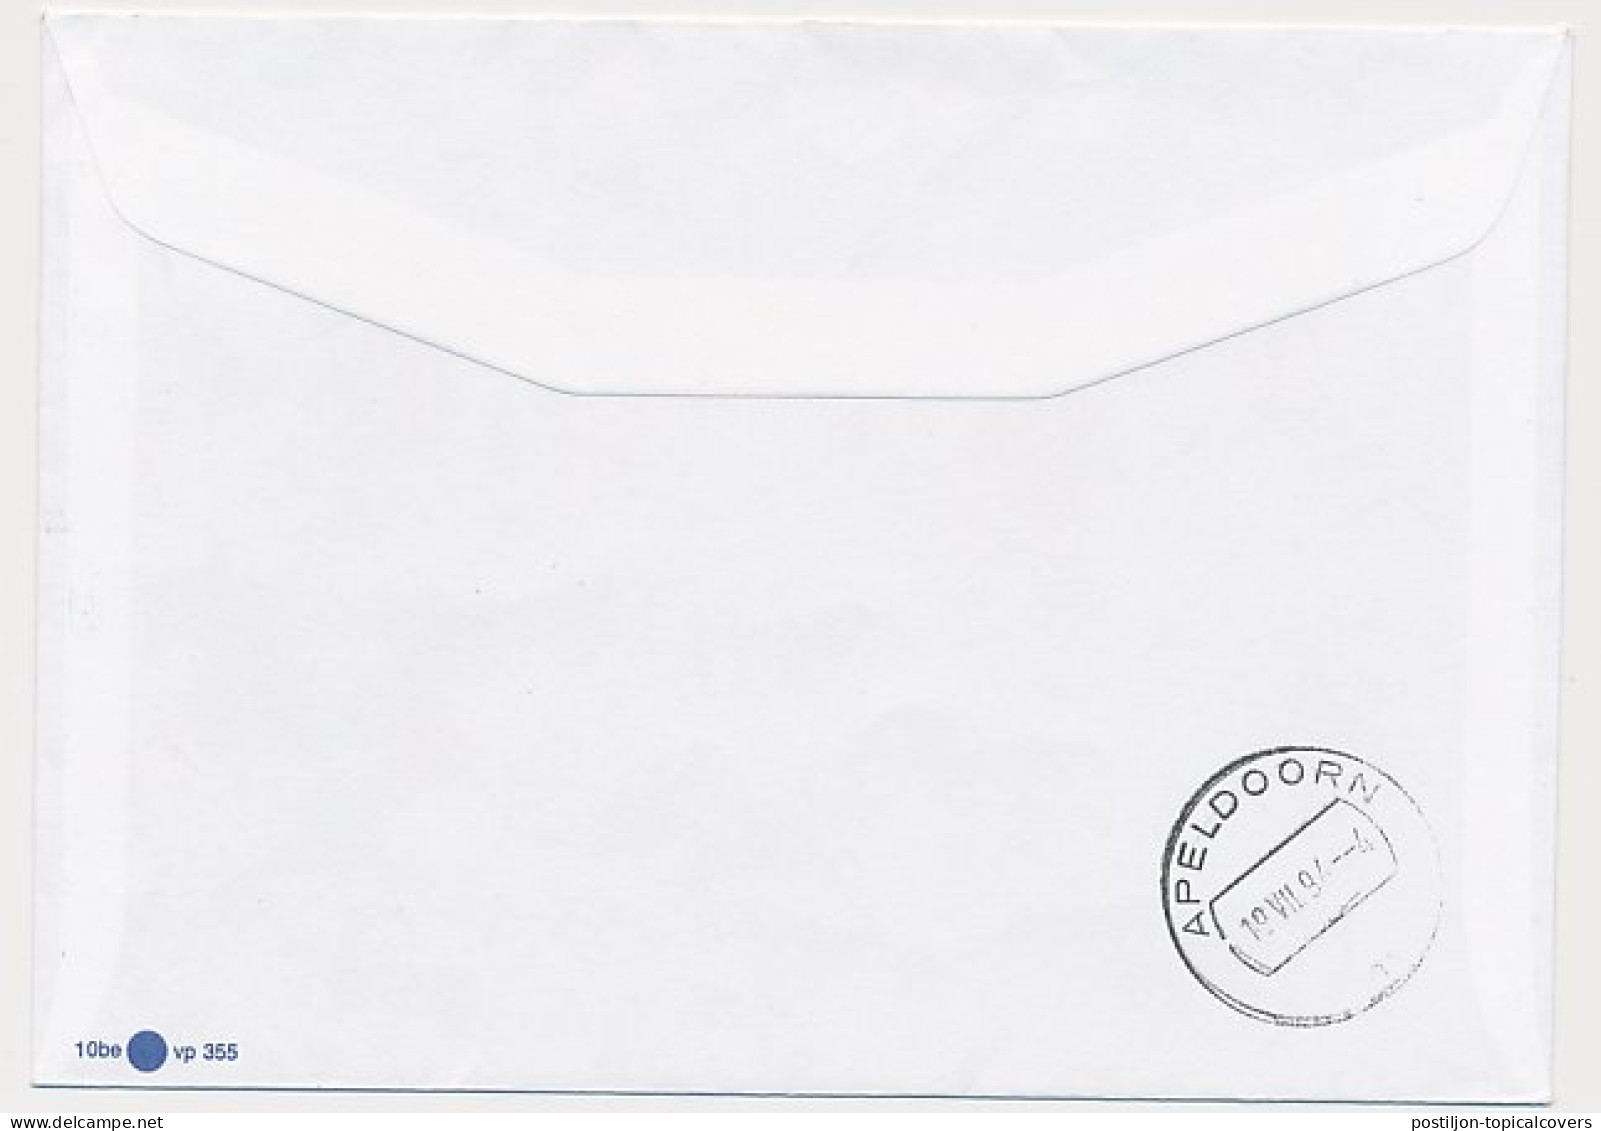 Rijdend Postkantoor Mini Postagentschap Roosendaal / Schijf 1994 - Non Classés